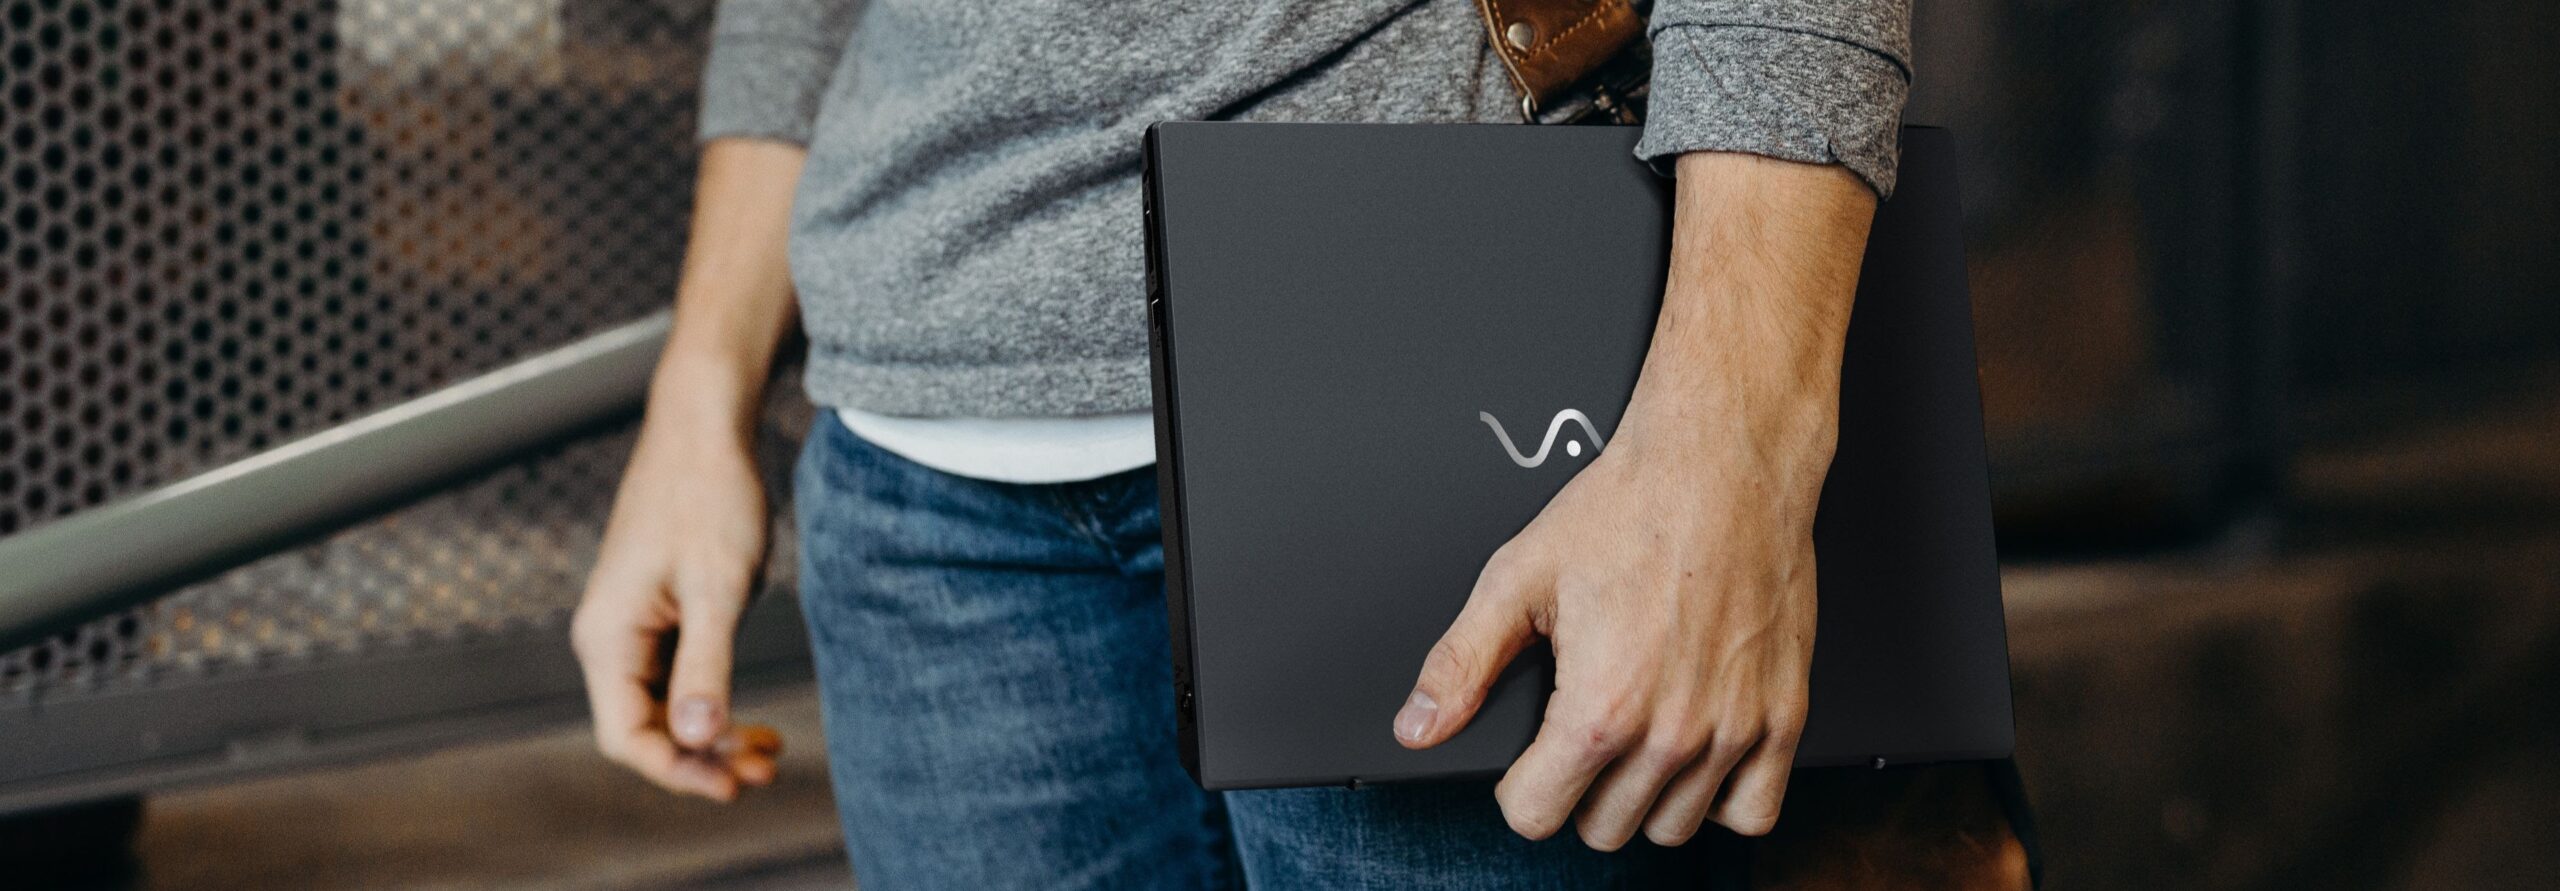 Vaio lança notebook com Alexa integrada